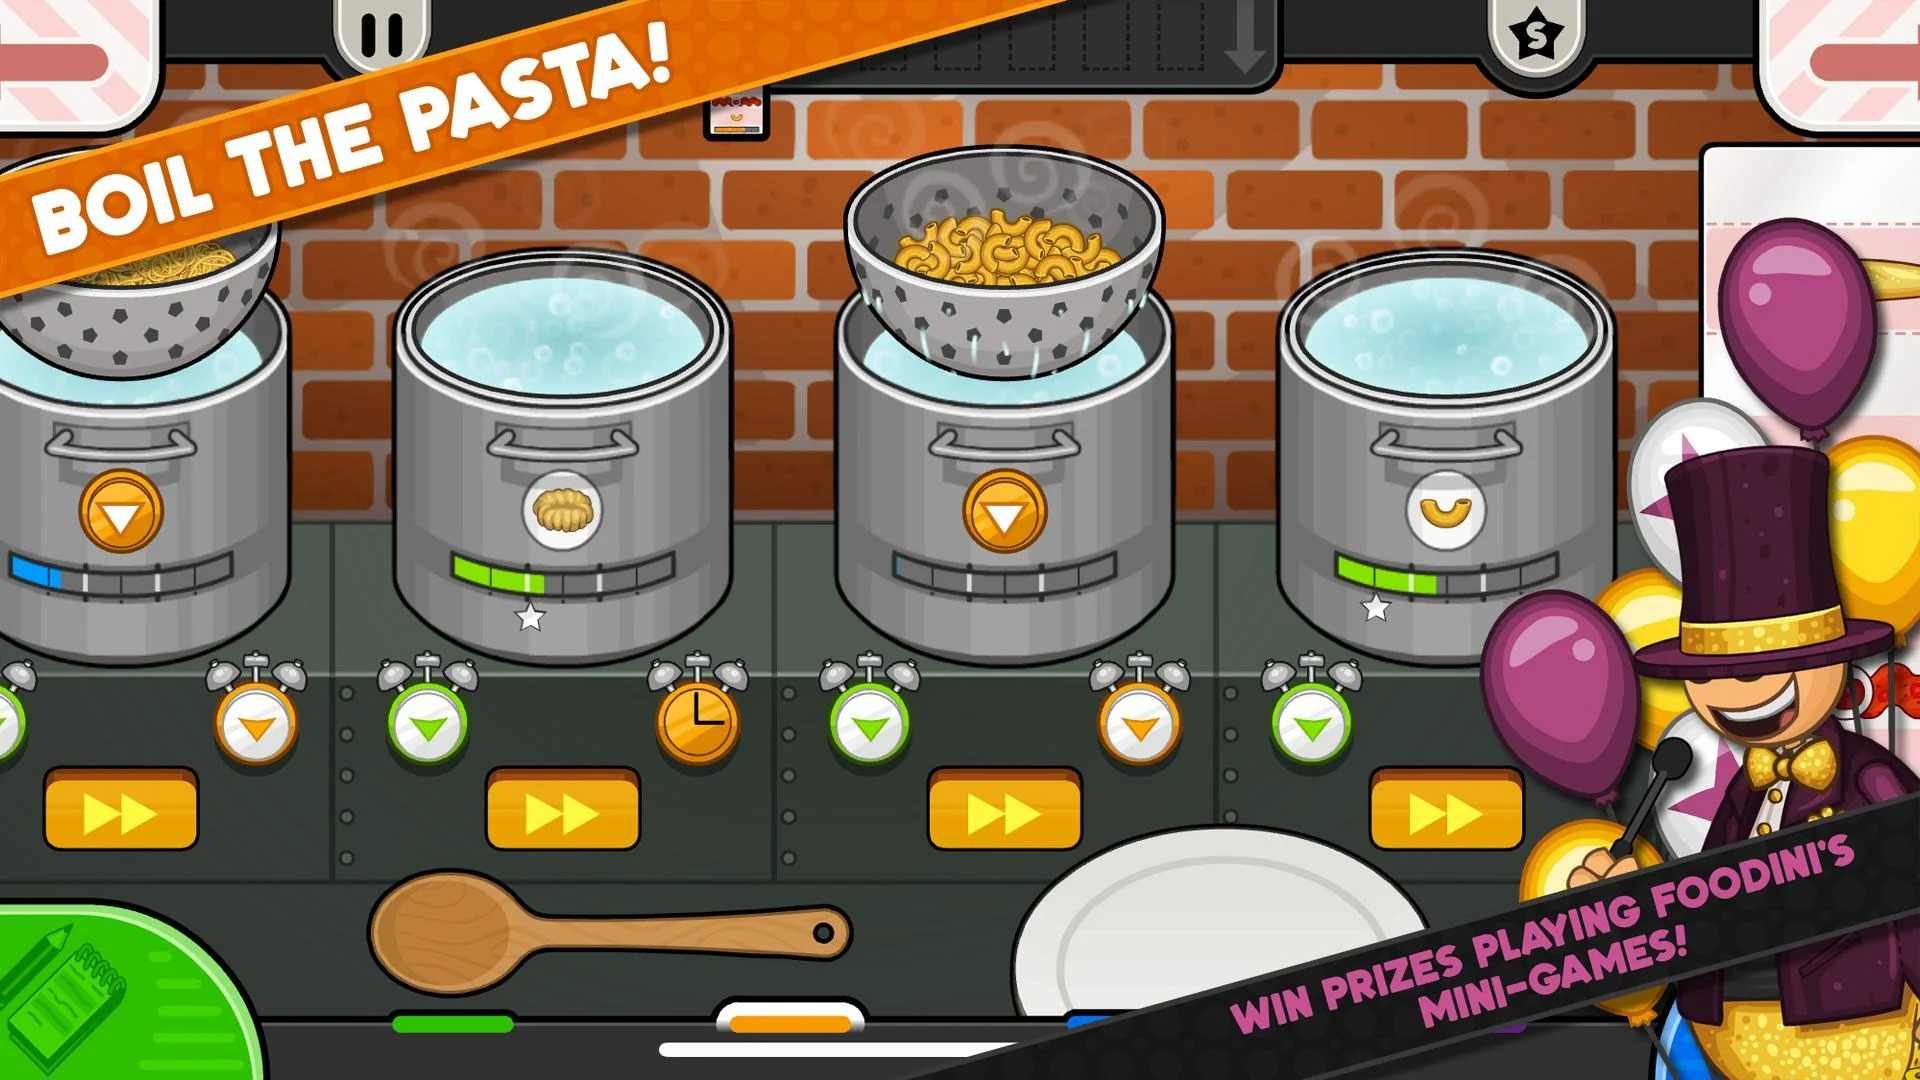 老爹意大利面店 (Papa's Pastaria To Go!)游戏截图-4